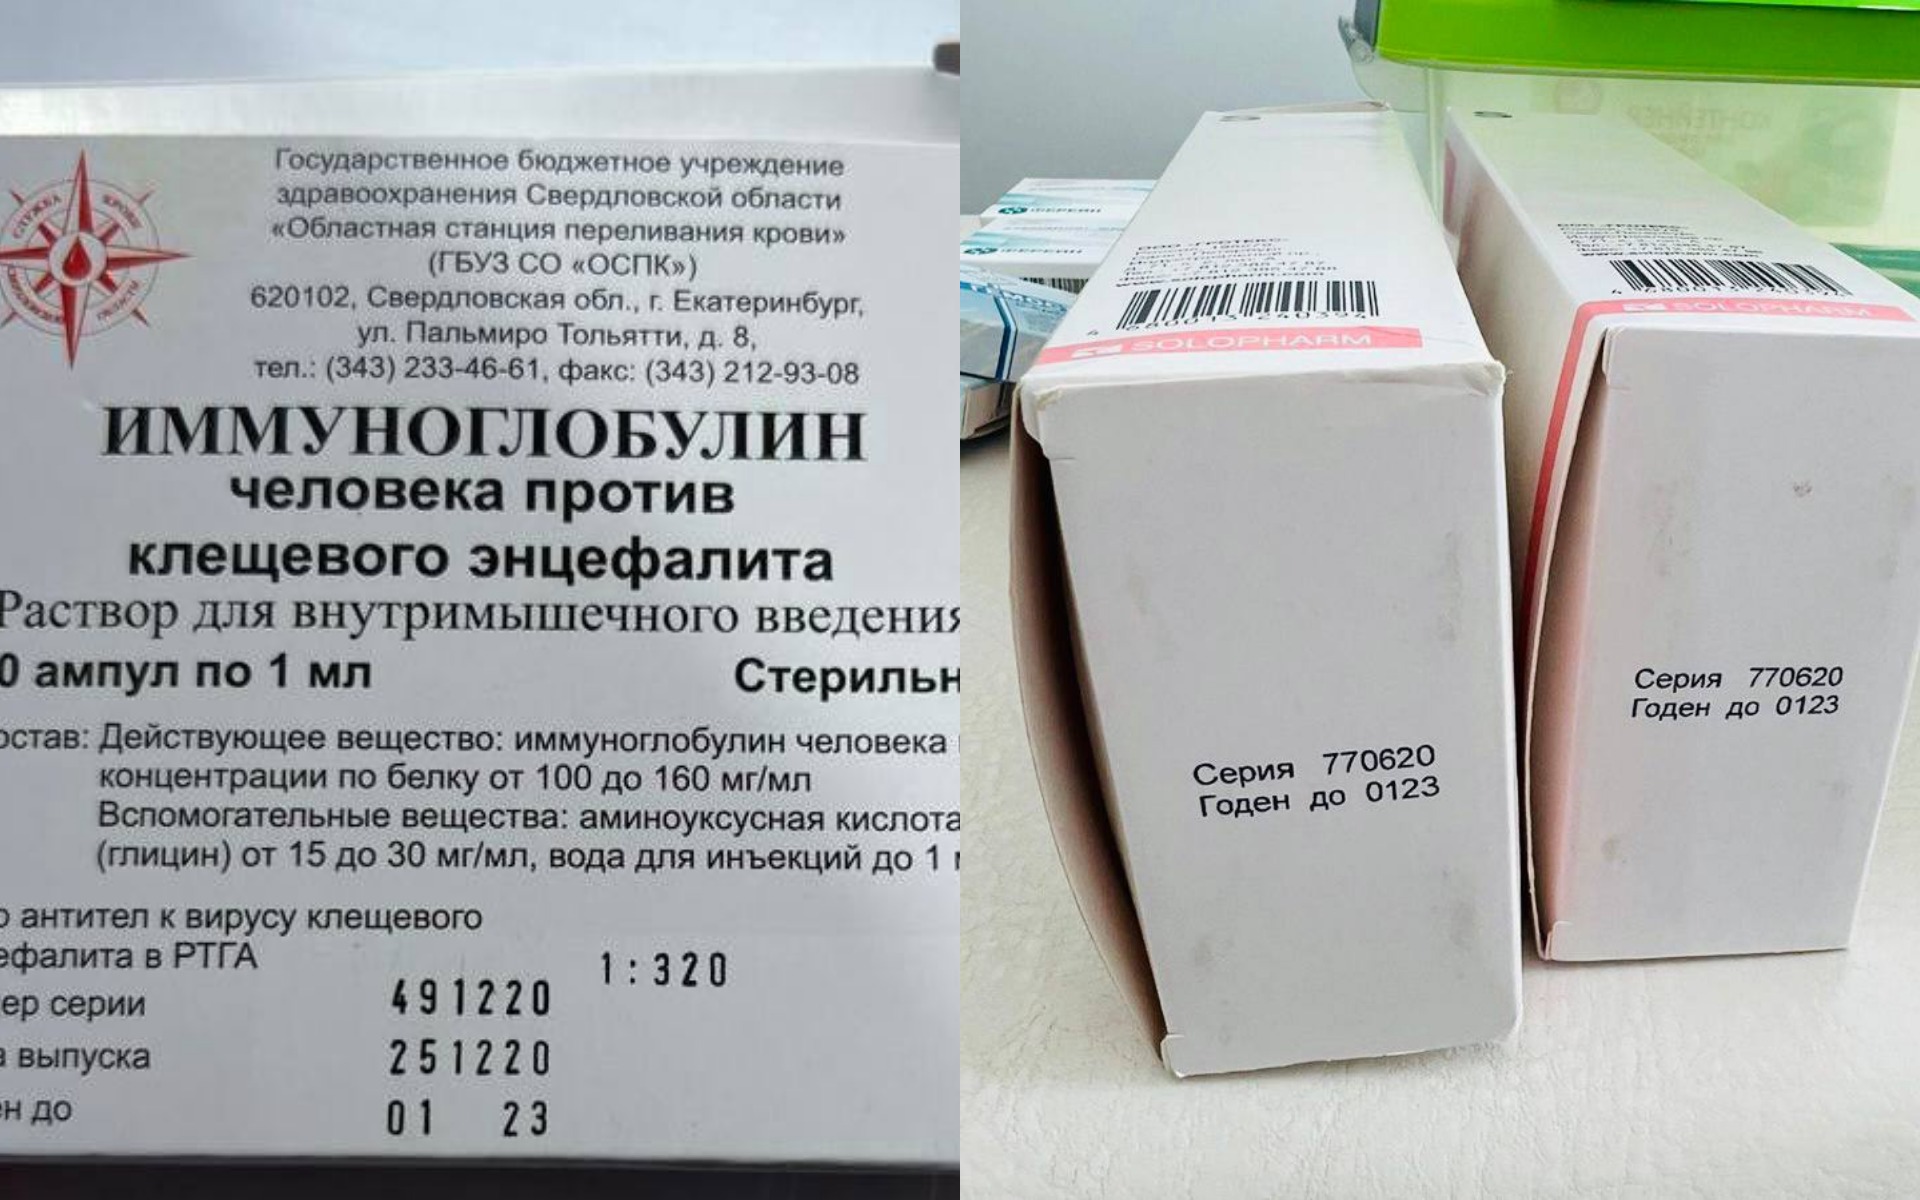 Сайт 27 поликлиники новосибирск. Просрочена прививка.